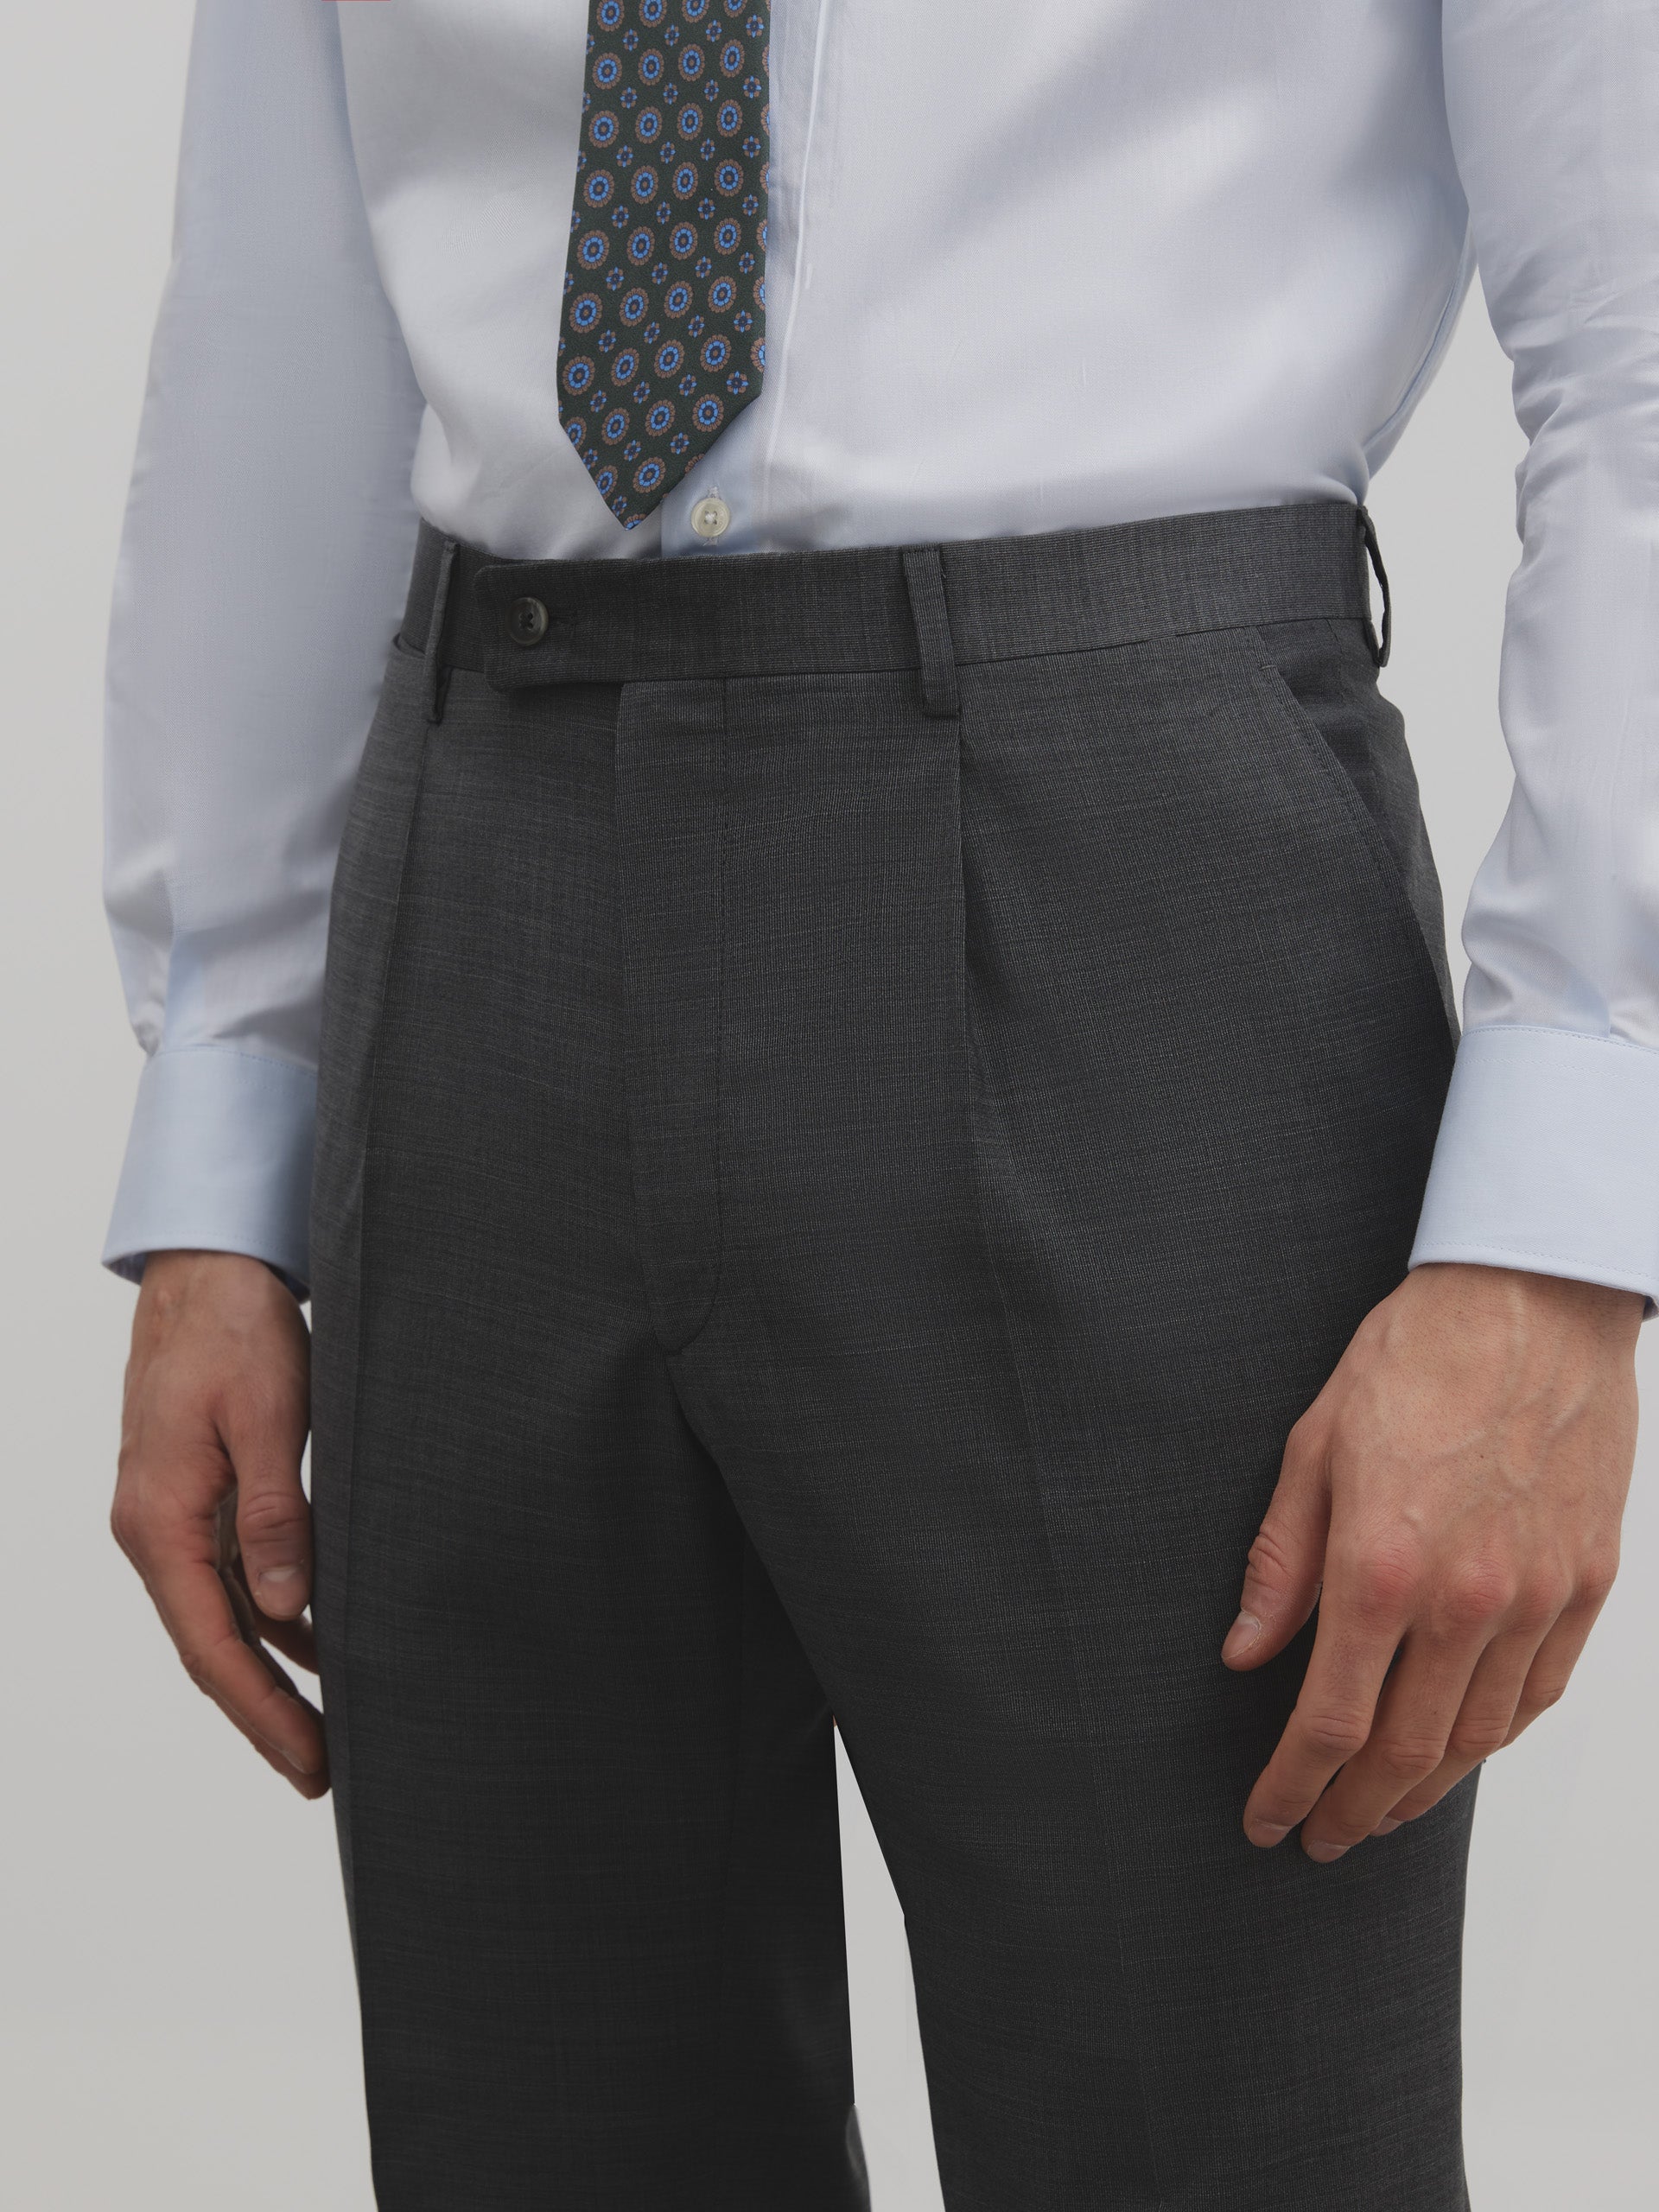 Pantalon traje fil a fil gris